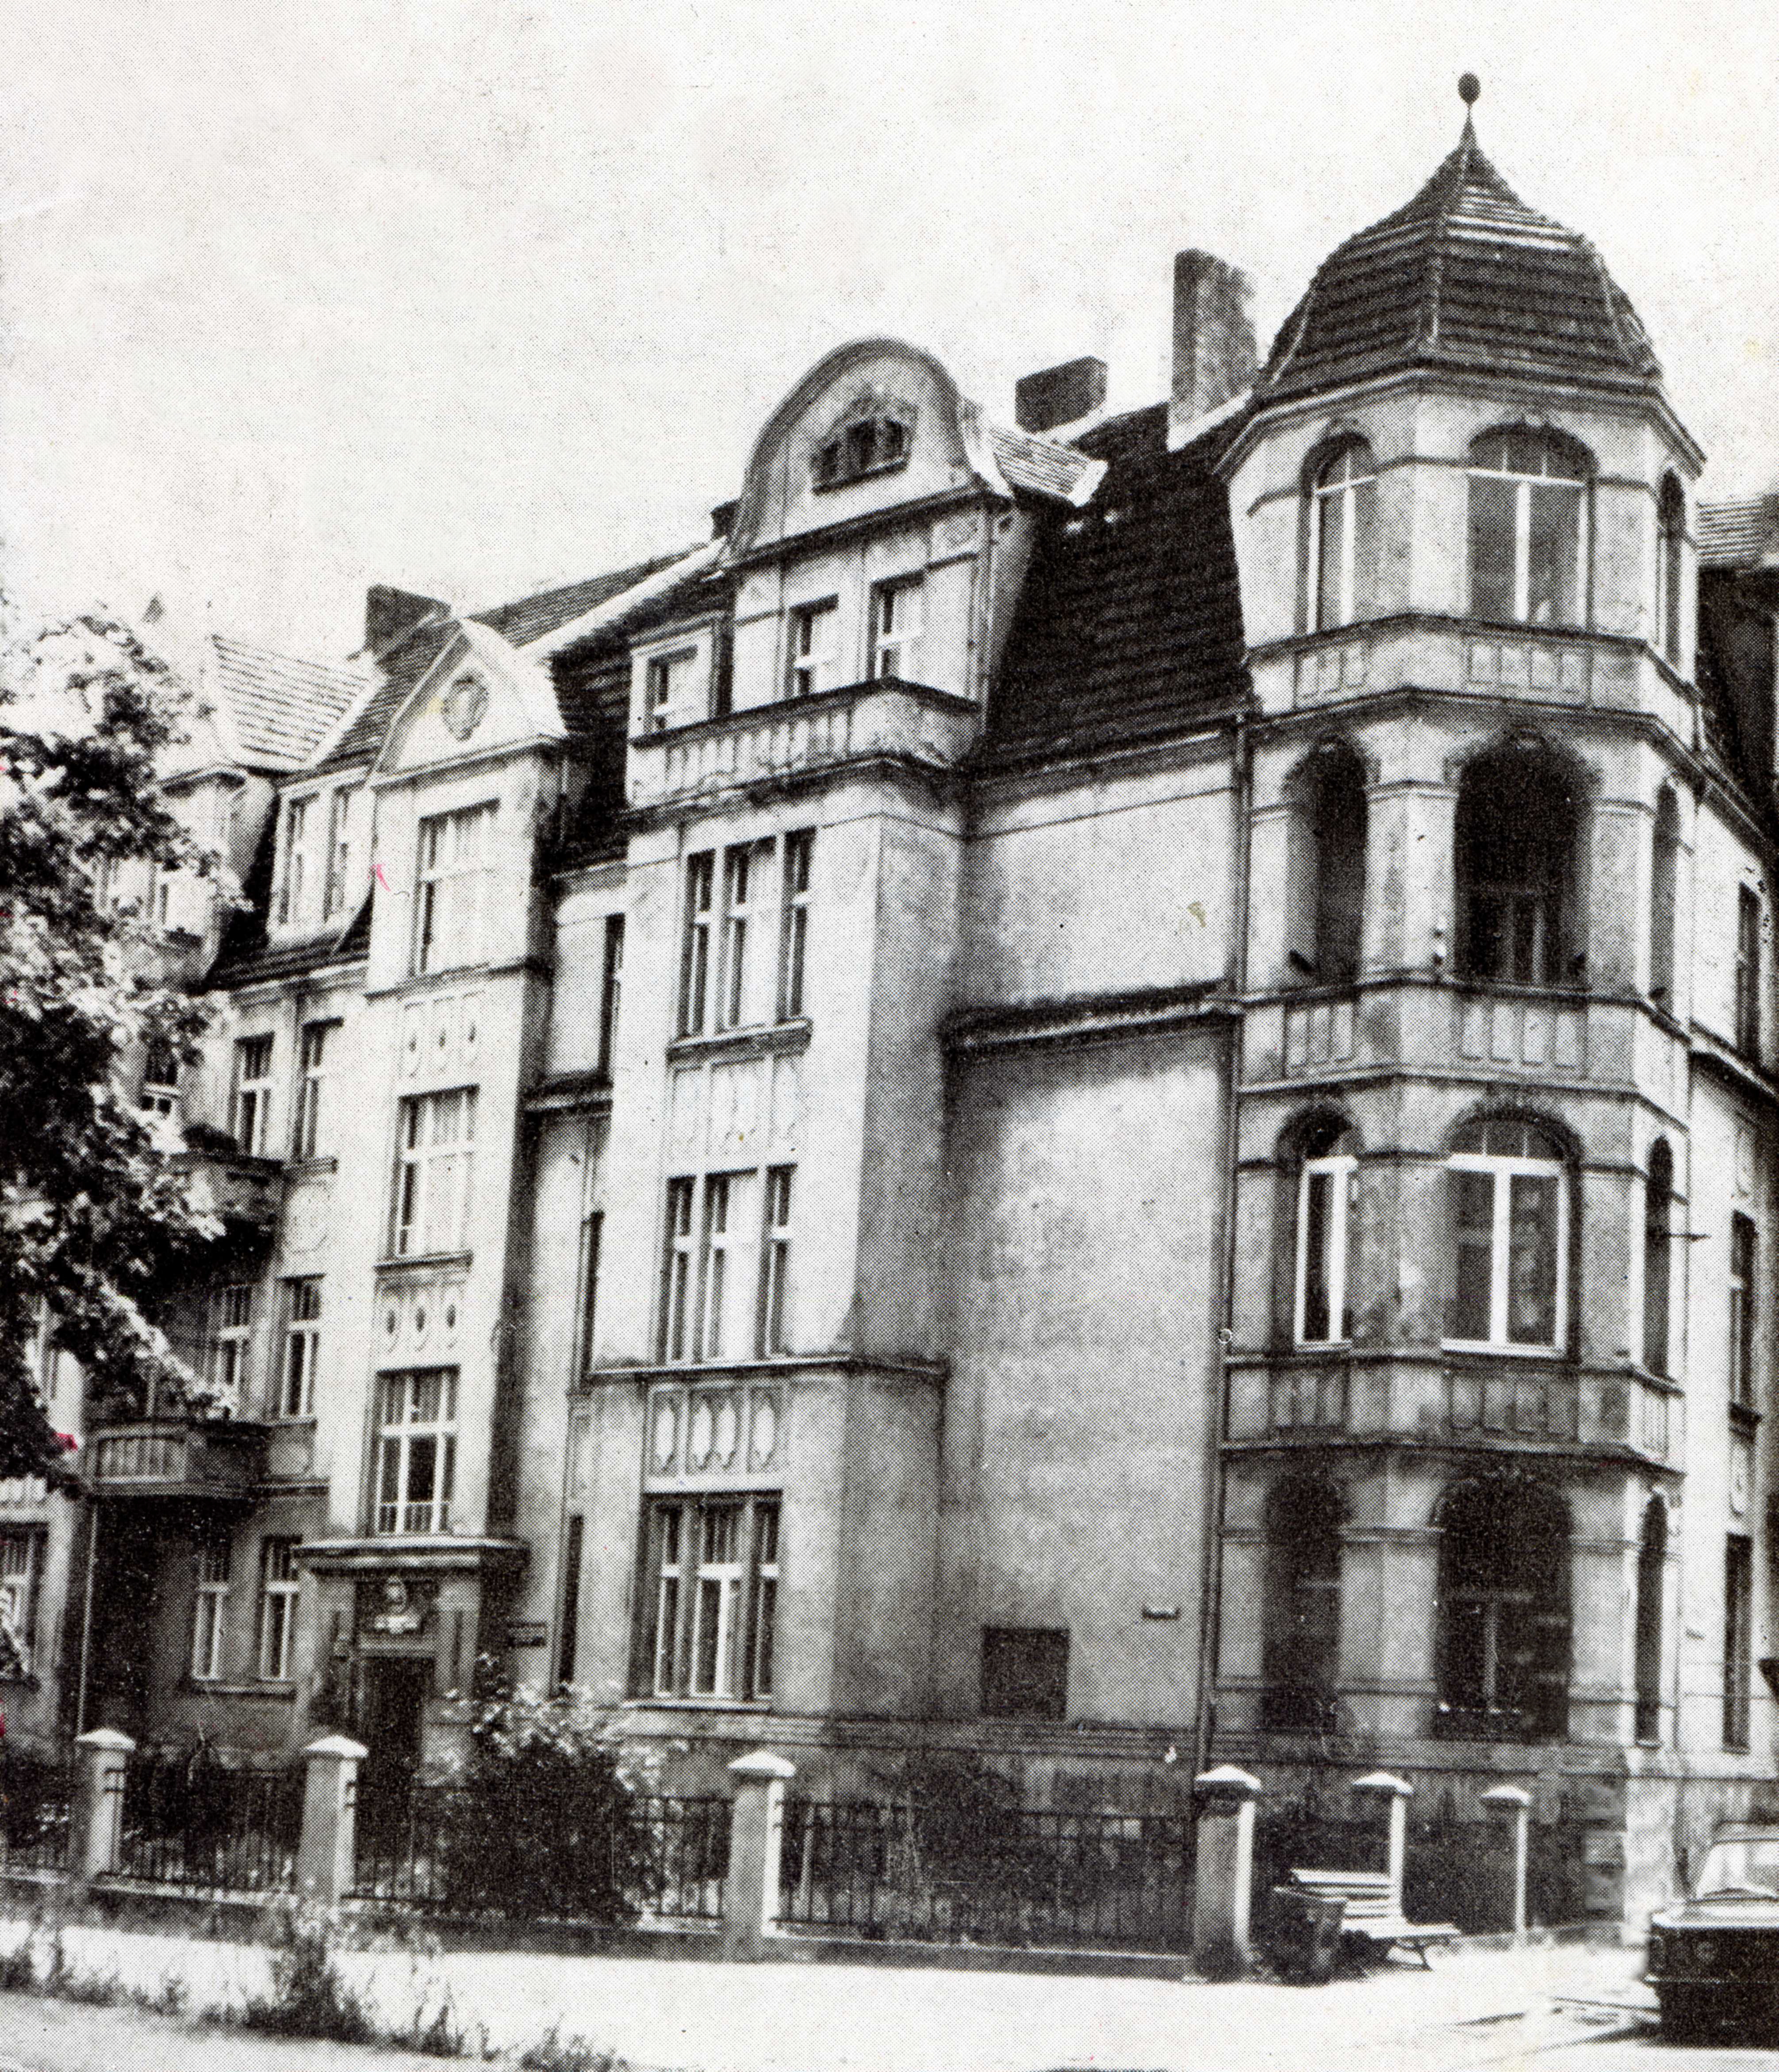 Zdjęcie czarno - białe przedstawiające kilku piętrową kamienicę, będącą poprzednią siedzibą Państwowej Szkoły Muzycznej